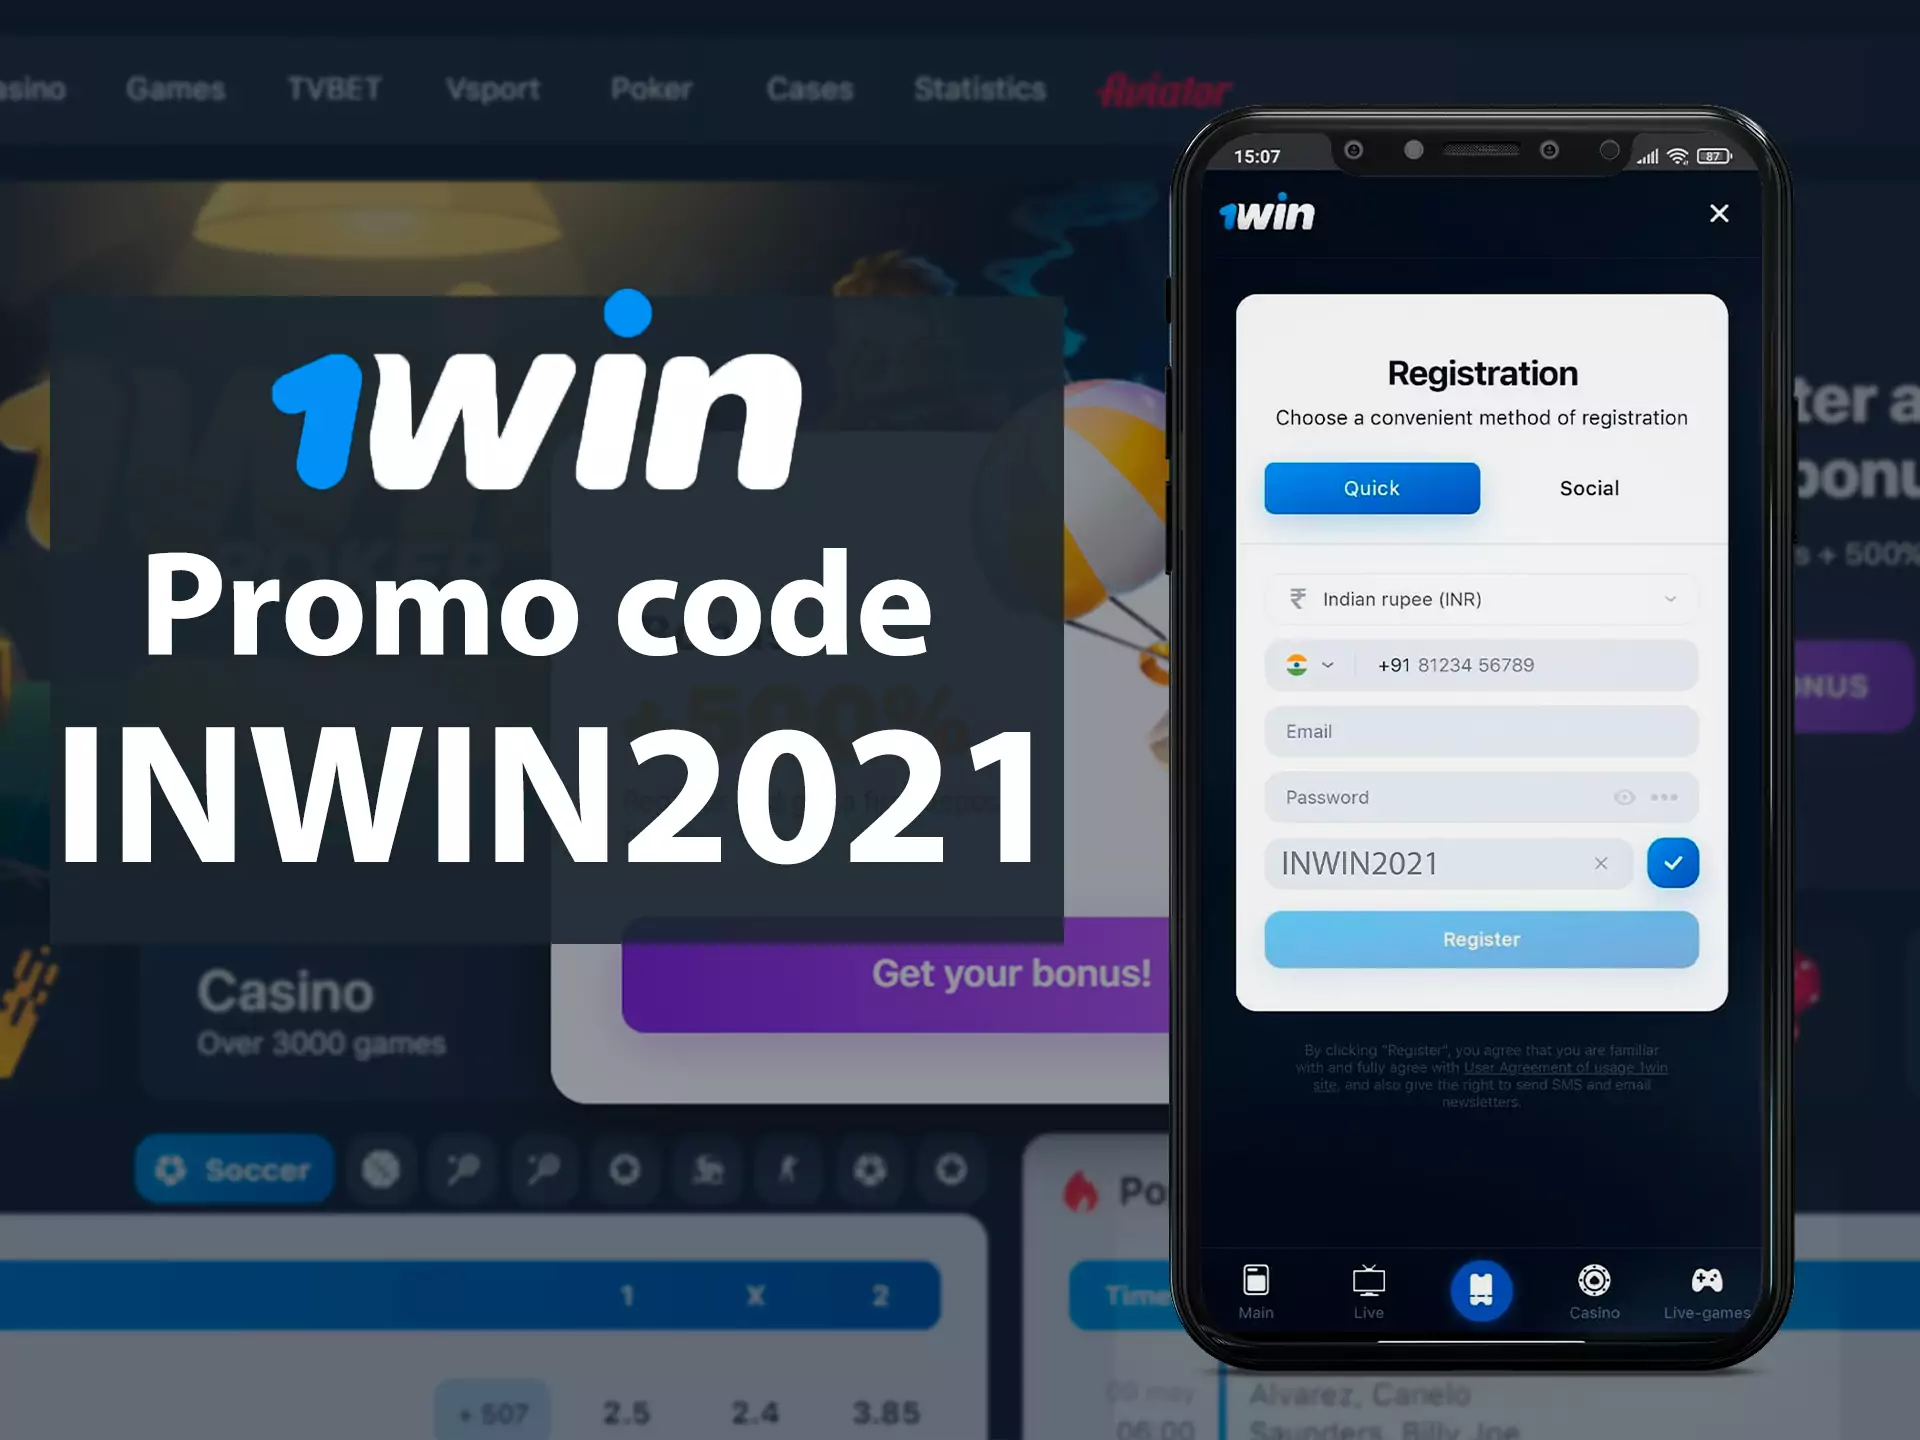 आप 145,000 तक रुपये ऐप में 1WIN2021 प्रोमो कोड के साथ प्राप्त कर सकते हैं।